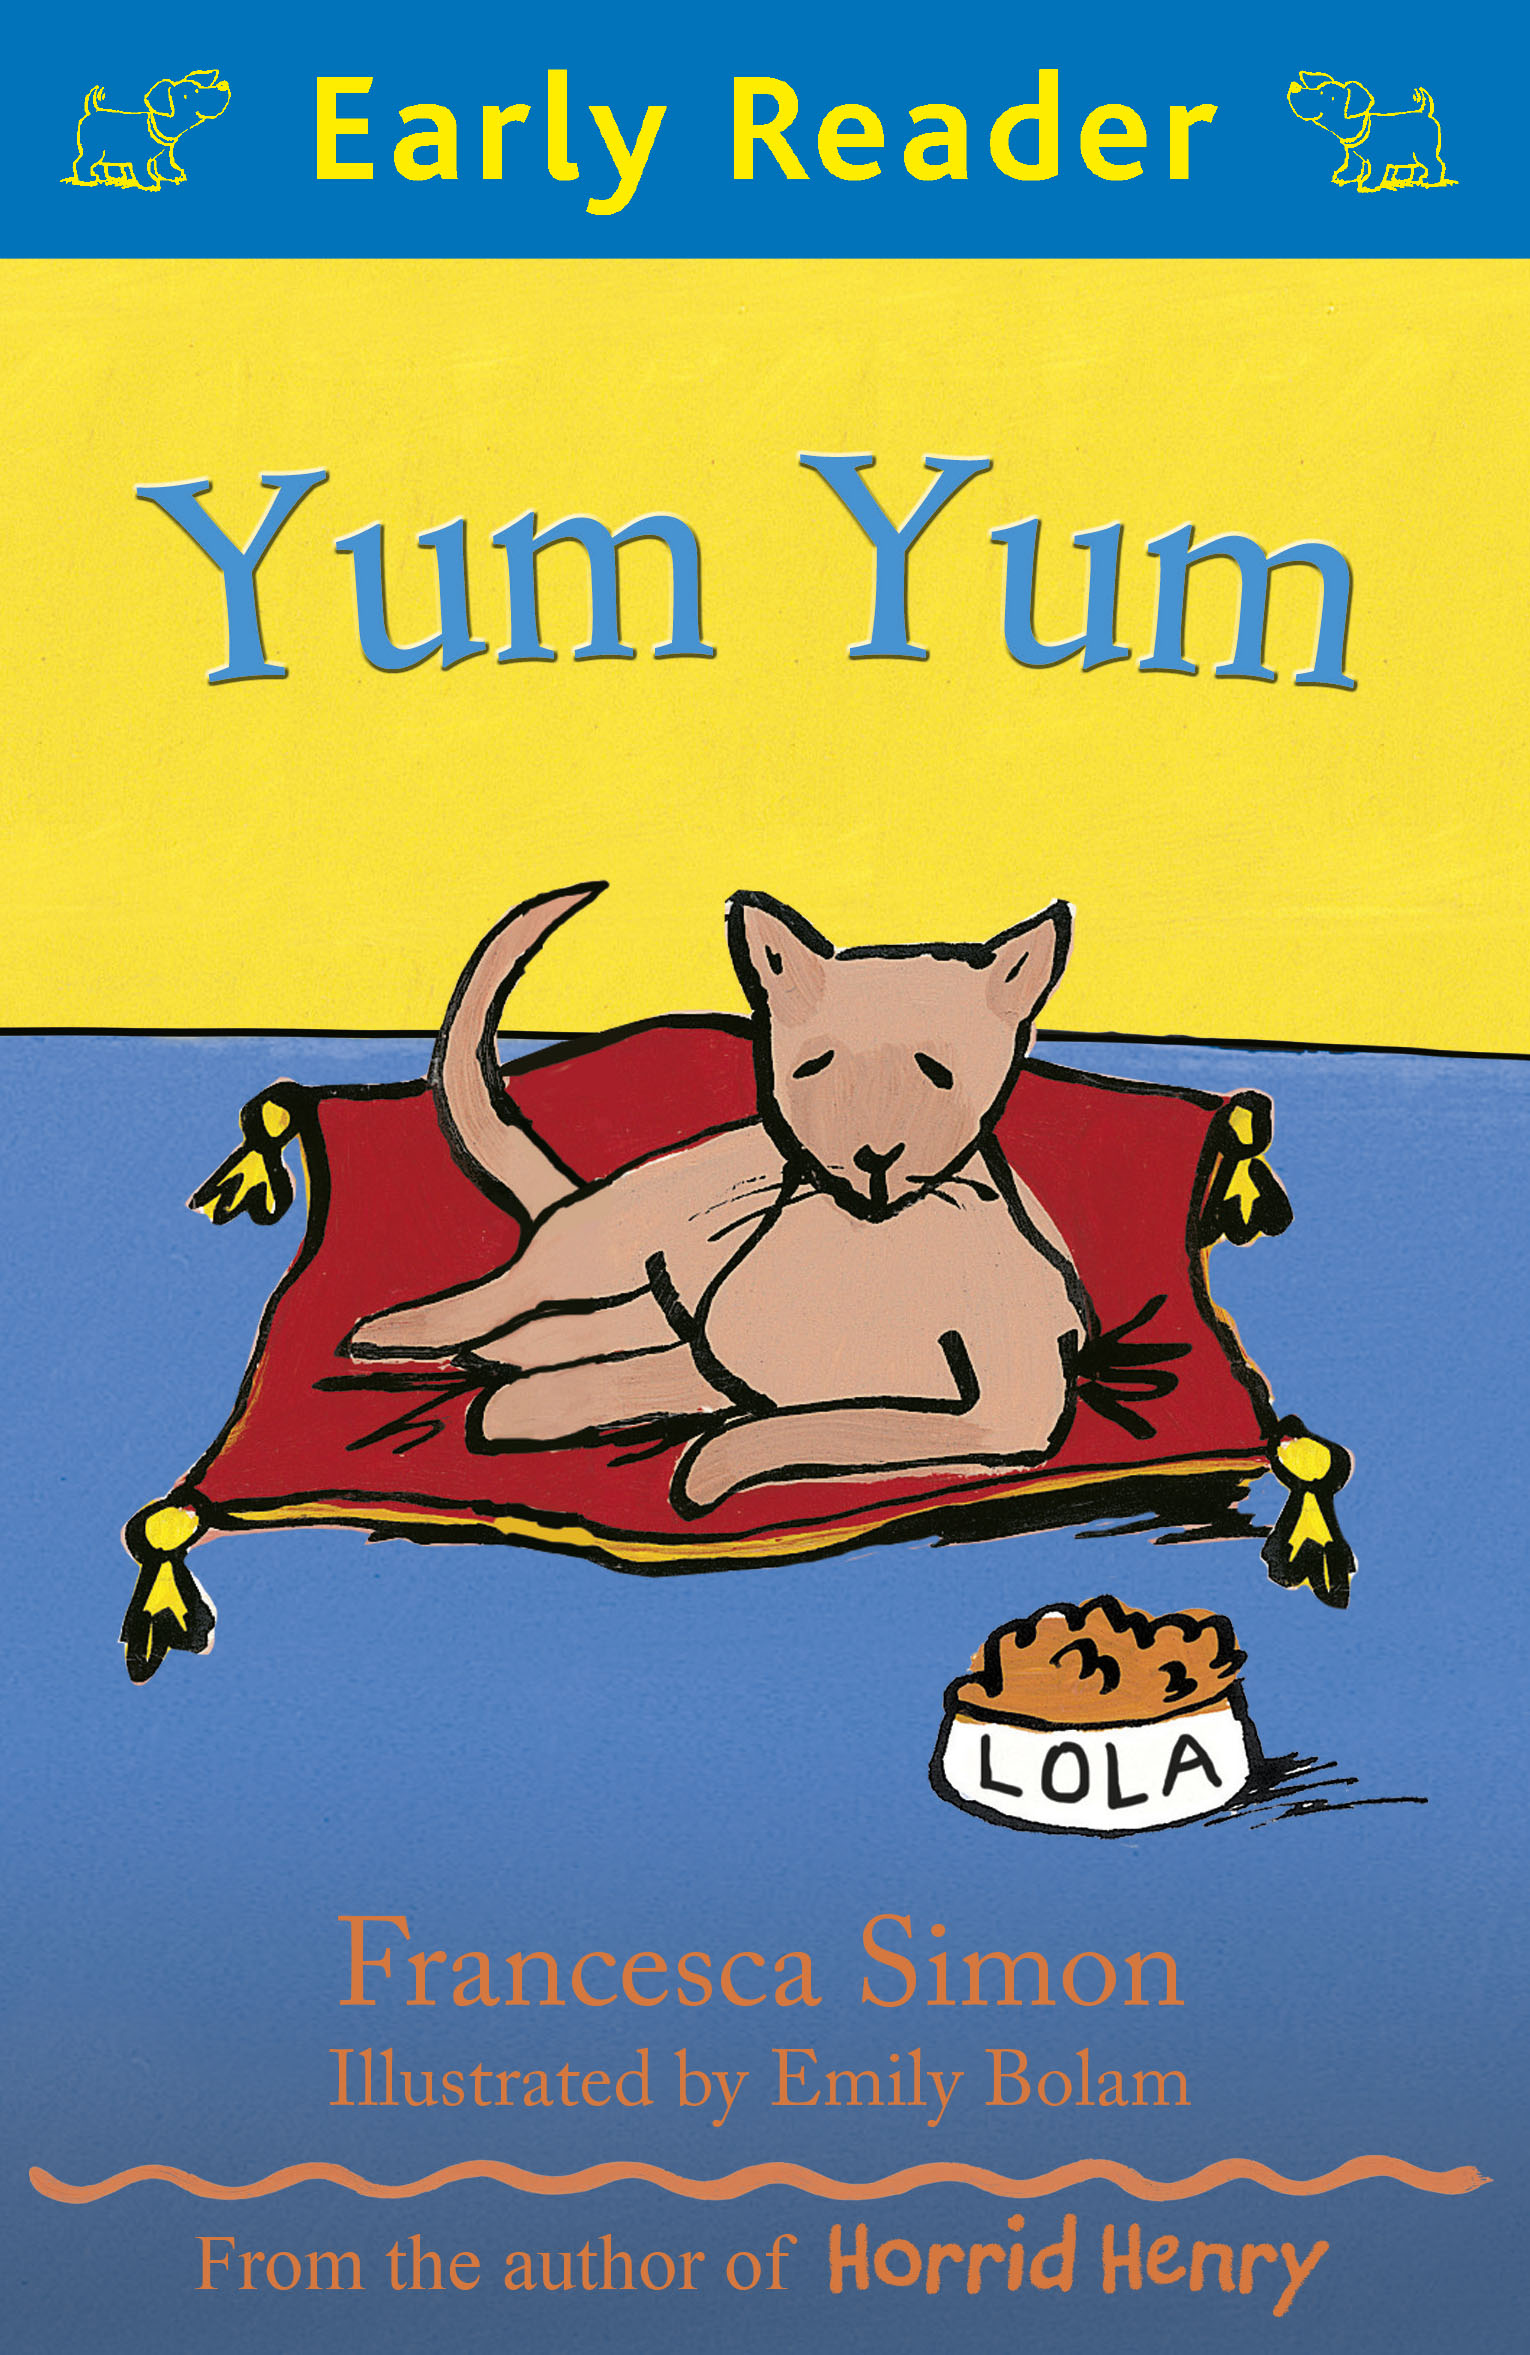 Early reading. Early Reader. Юм-юм книга для детей. Детская книга Yum Yum Baby. Детская книга на английском языке Yum Yum.